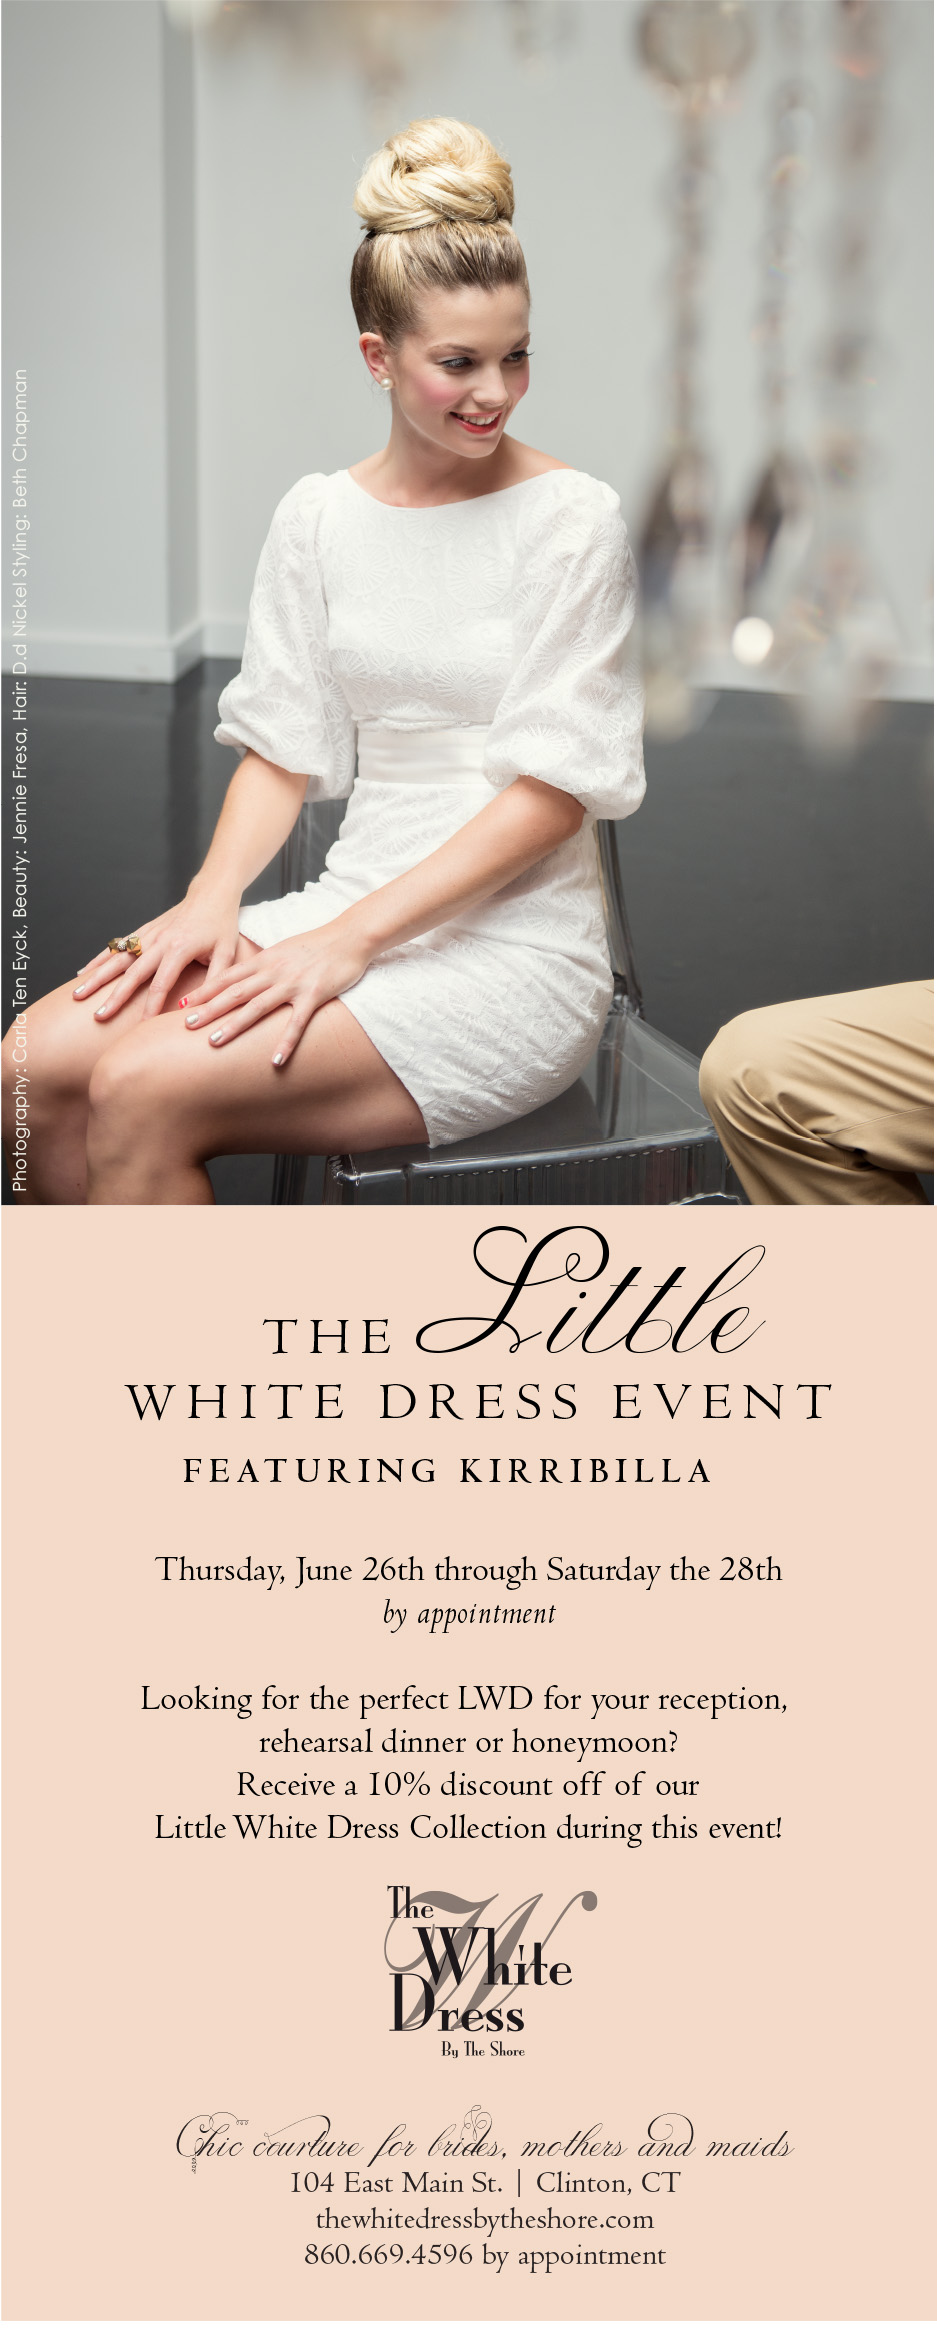 June 26-28: Little White Dress Event featuring Kirribilla. Desktop Image